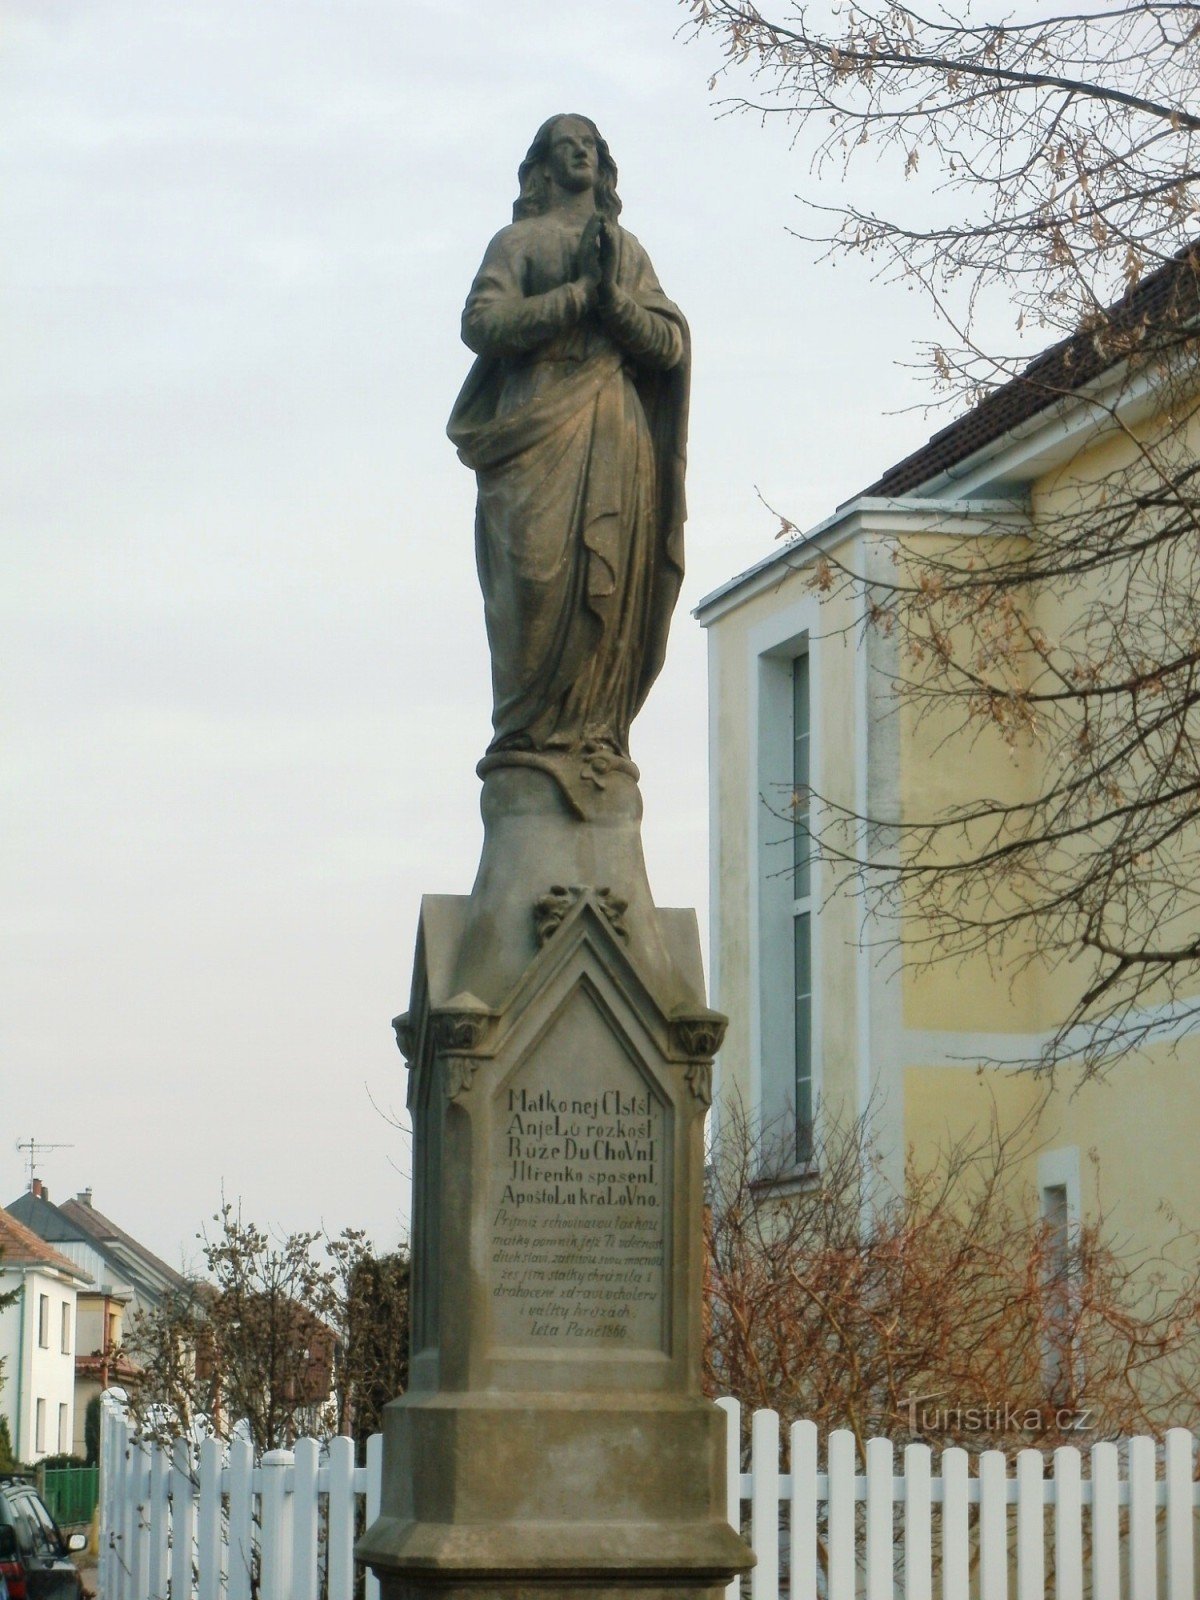 Nový Bydžov - ett monument med en staty av St. Jungfru Maria